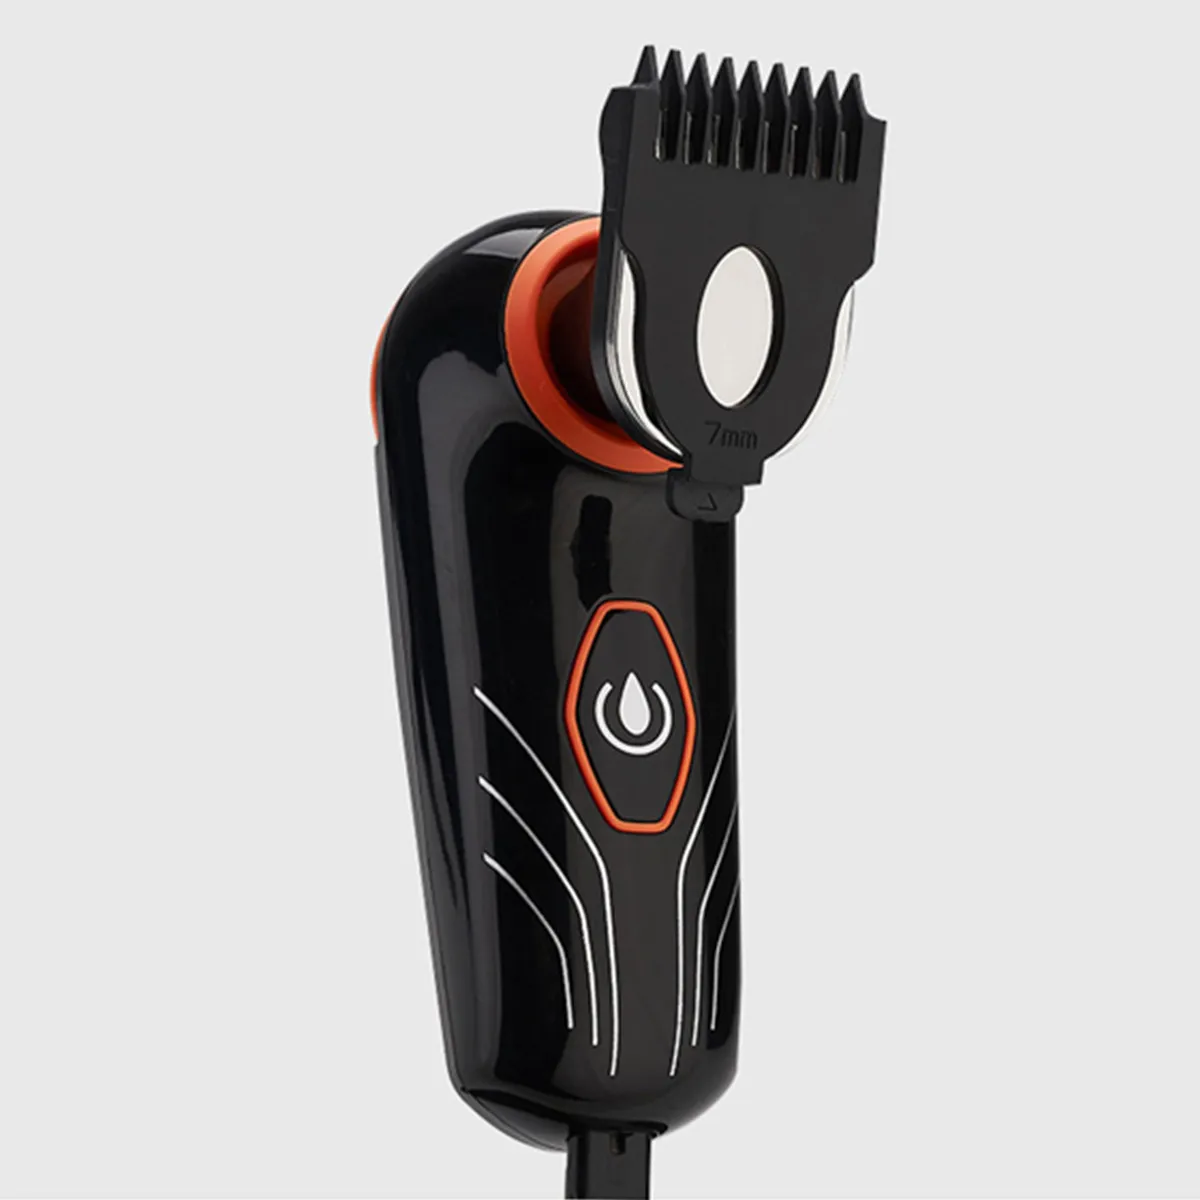 4D машинка для стрижки волос 2 в 1 5 лезвий электрическая бритва триммер для бороды бритва для мужчин водонепроницаемый роторный станок для бритья